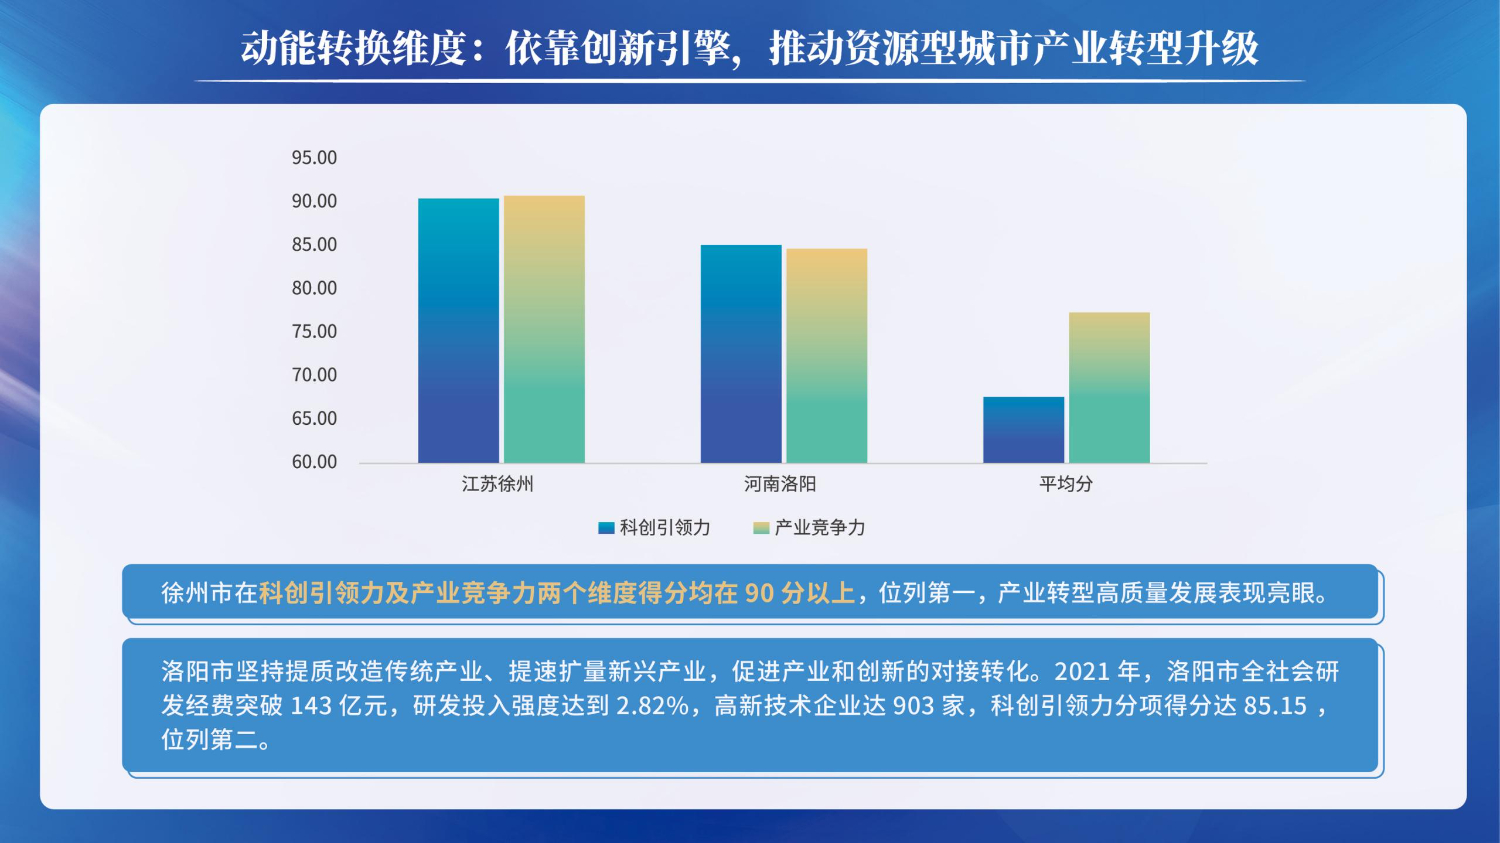 06201503中国资源型城市转型发展指数(1)_16.jpg